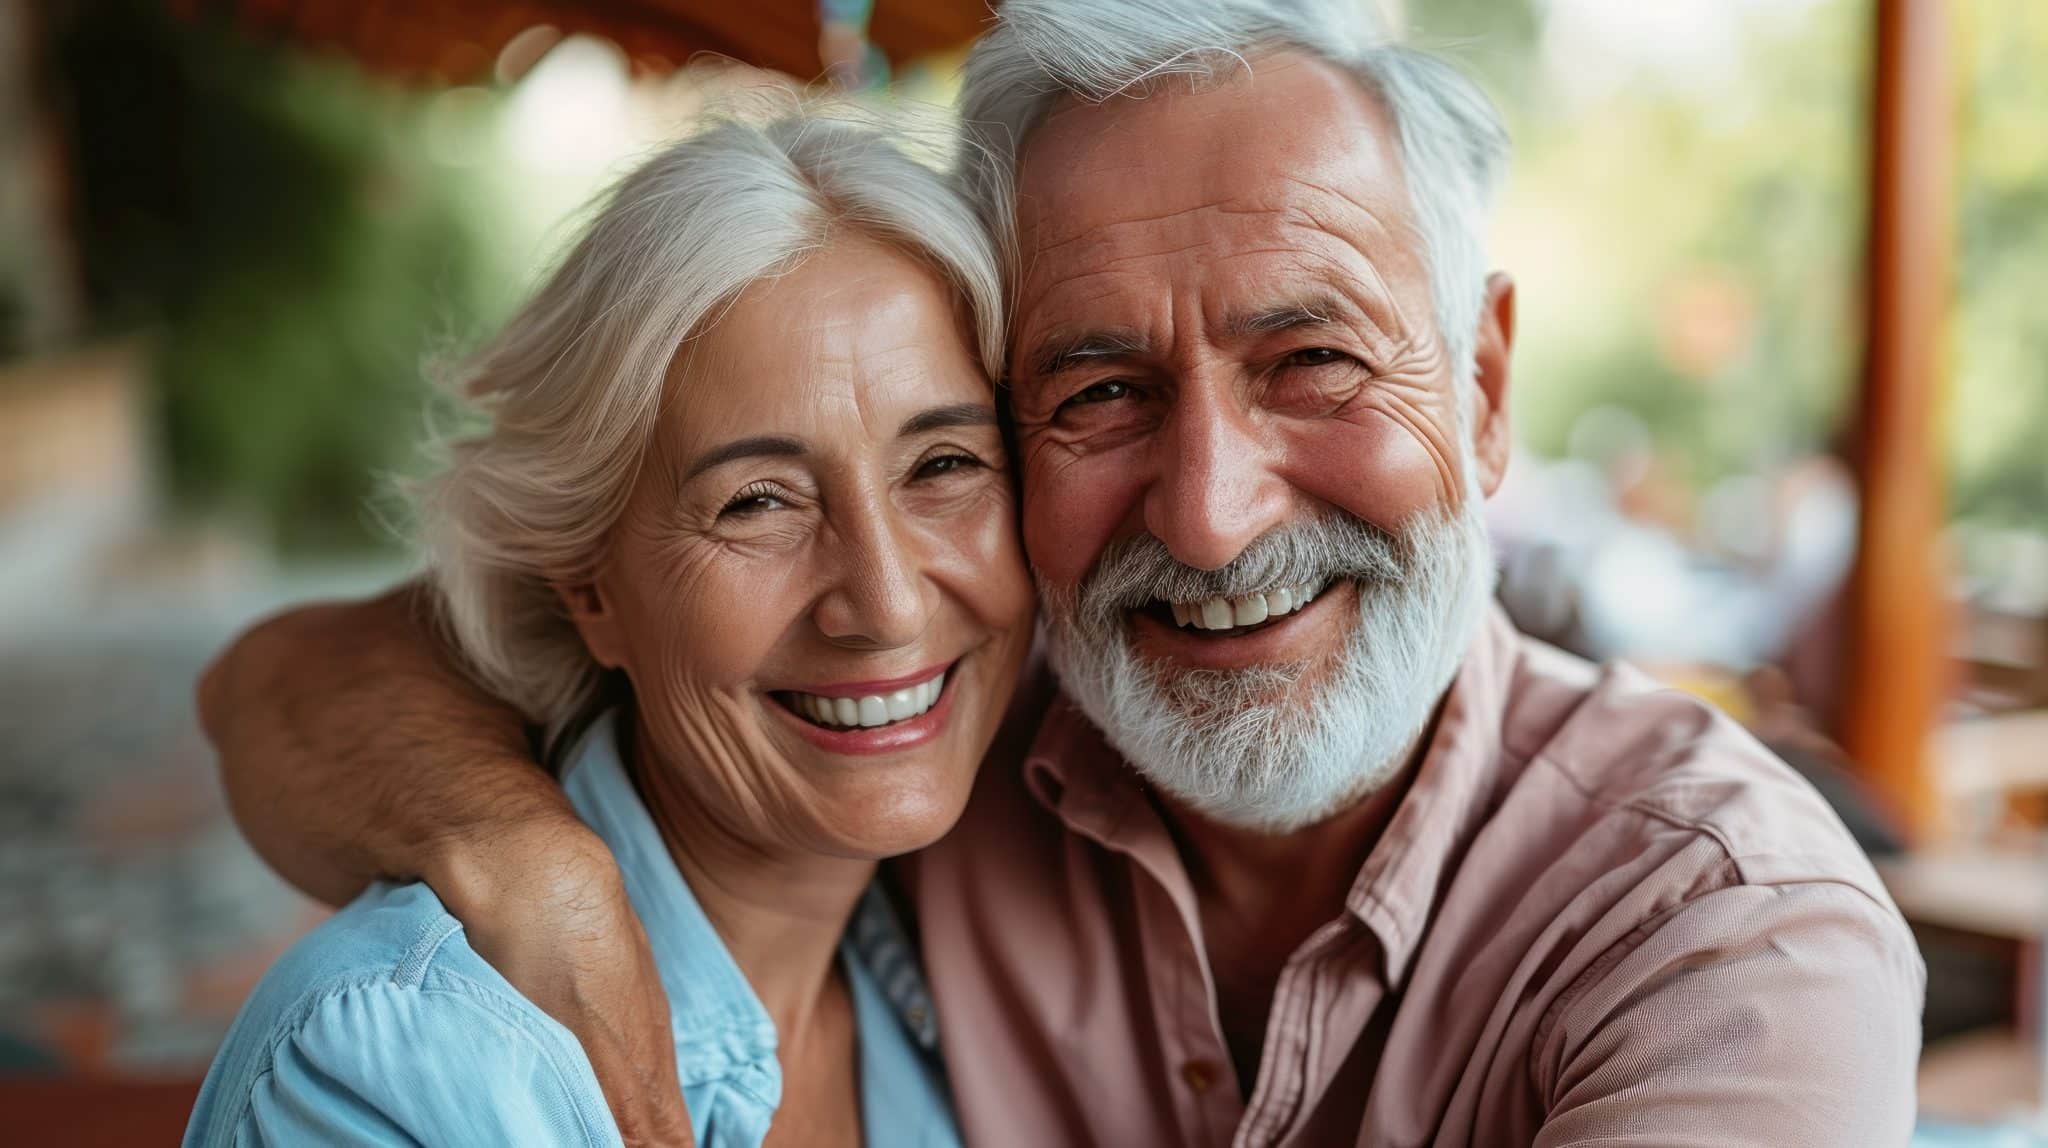 Das Foto zeigt ein glückliches, älteres Paar mit strahlendem Lachen und gesunden Zähnen.